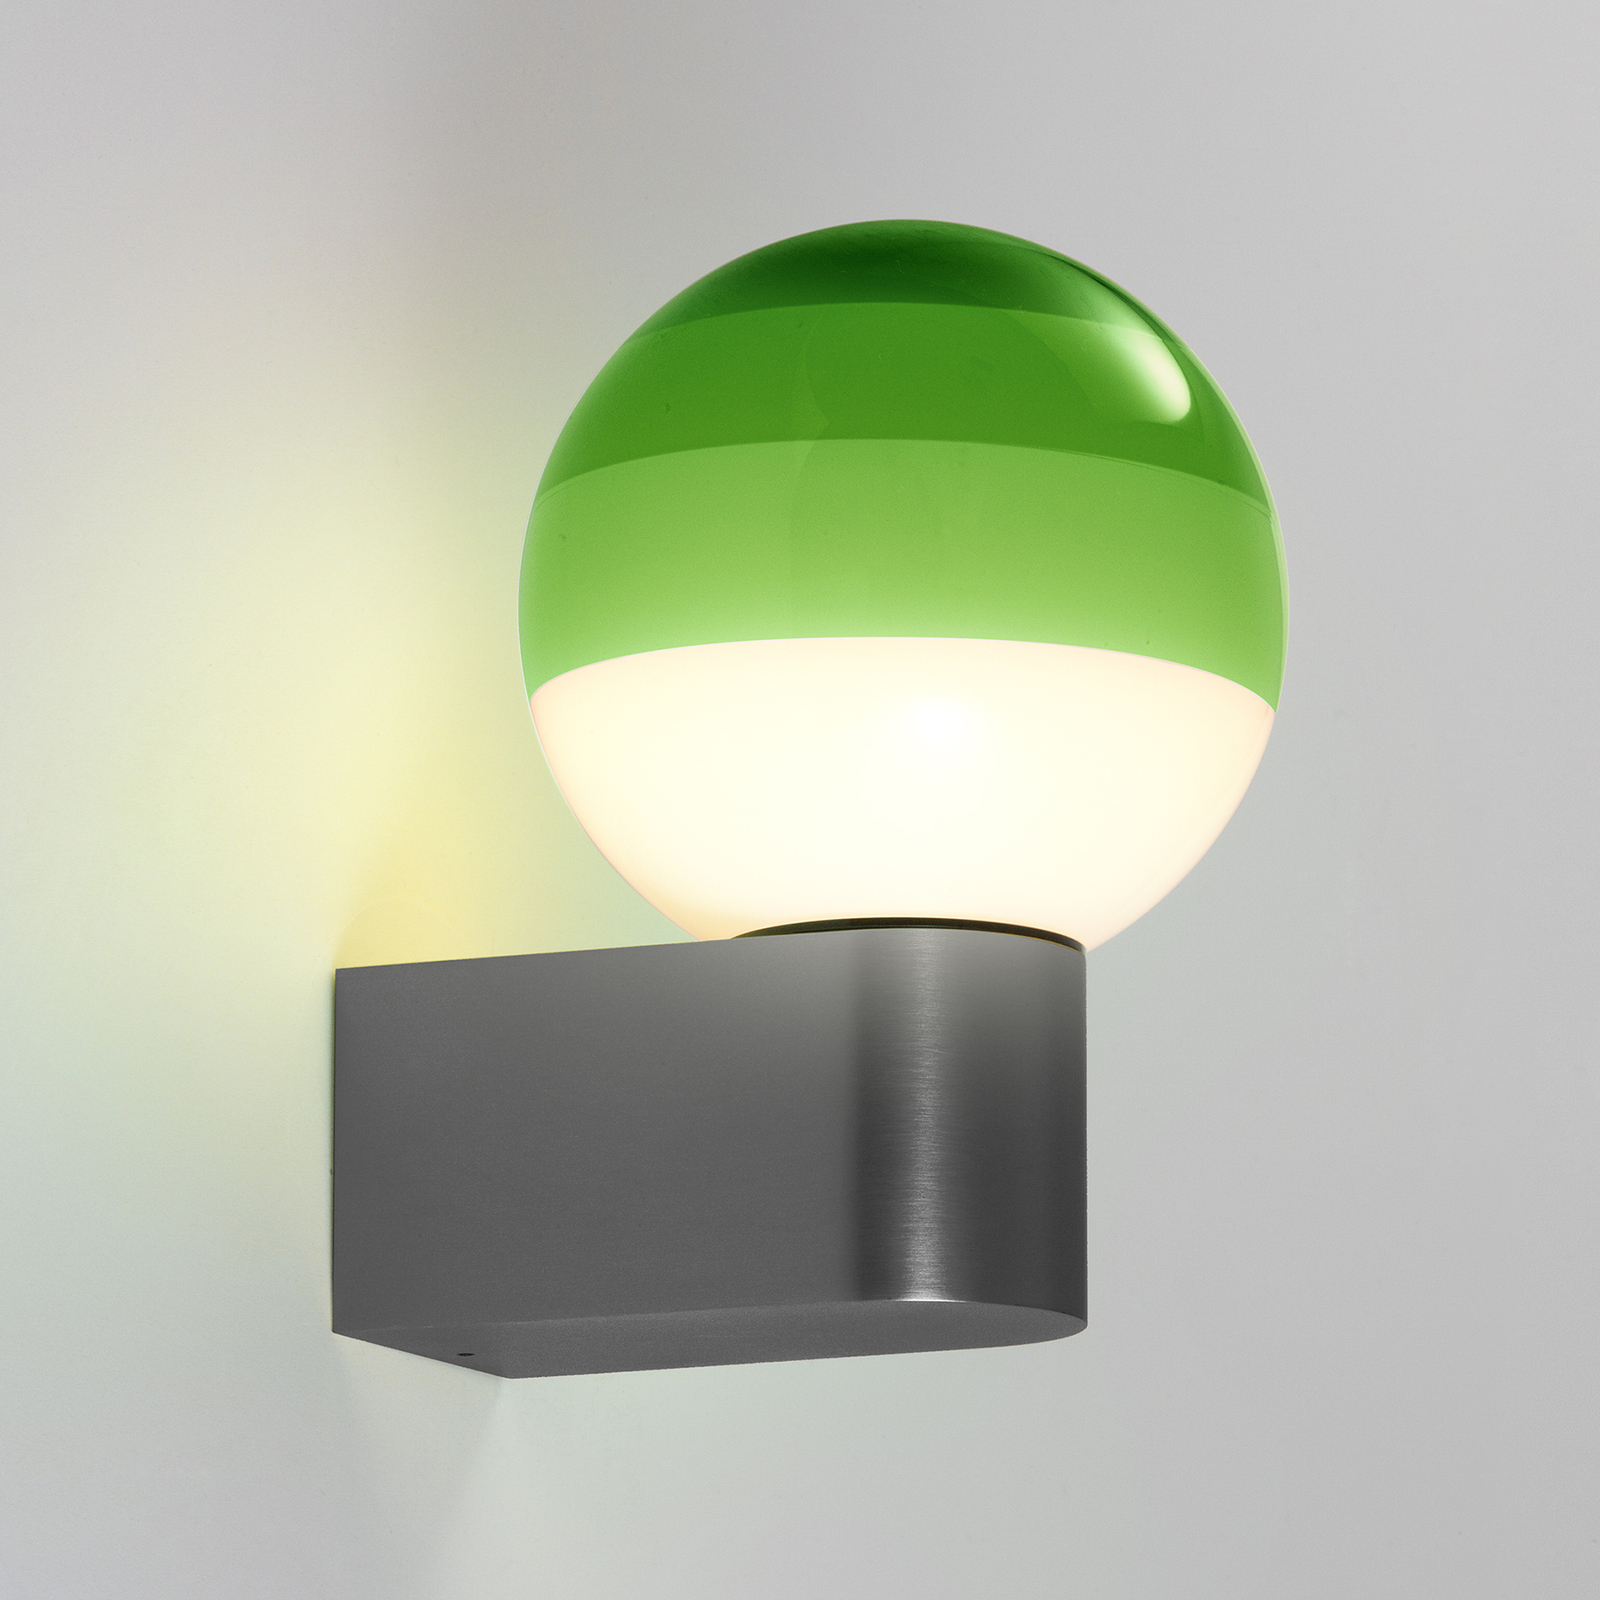 MARSET Dipping Light A1 LED-es fali lámpa, zöld/szürke